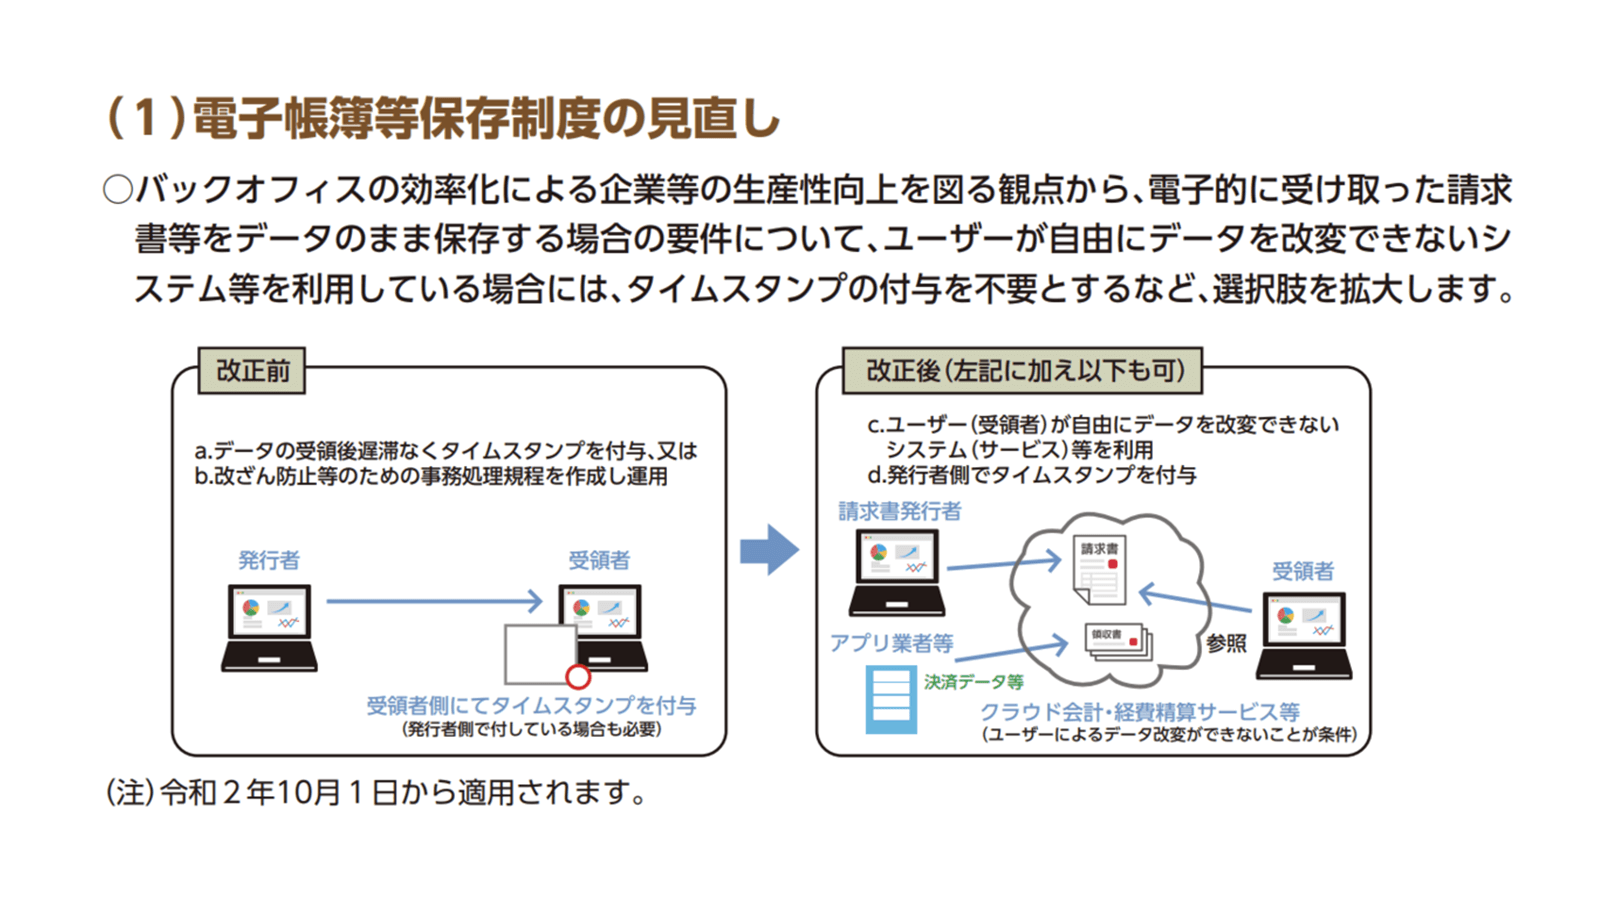 https://www.mof.go.jp/tax_policy/publication/brochure/zeisei20_pdf/zeisei20_05.pdf 2020年8月4日最終アクセス